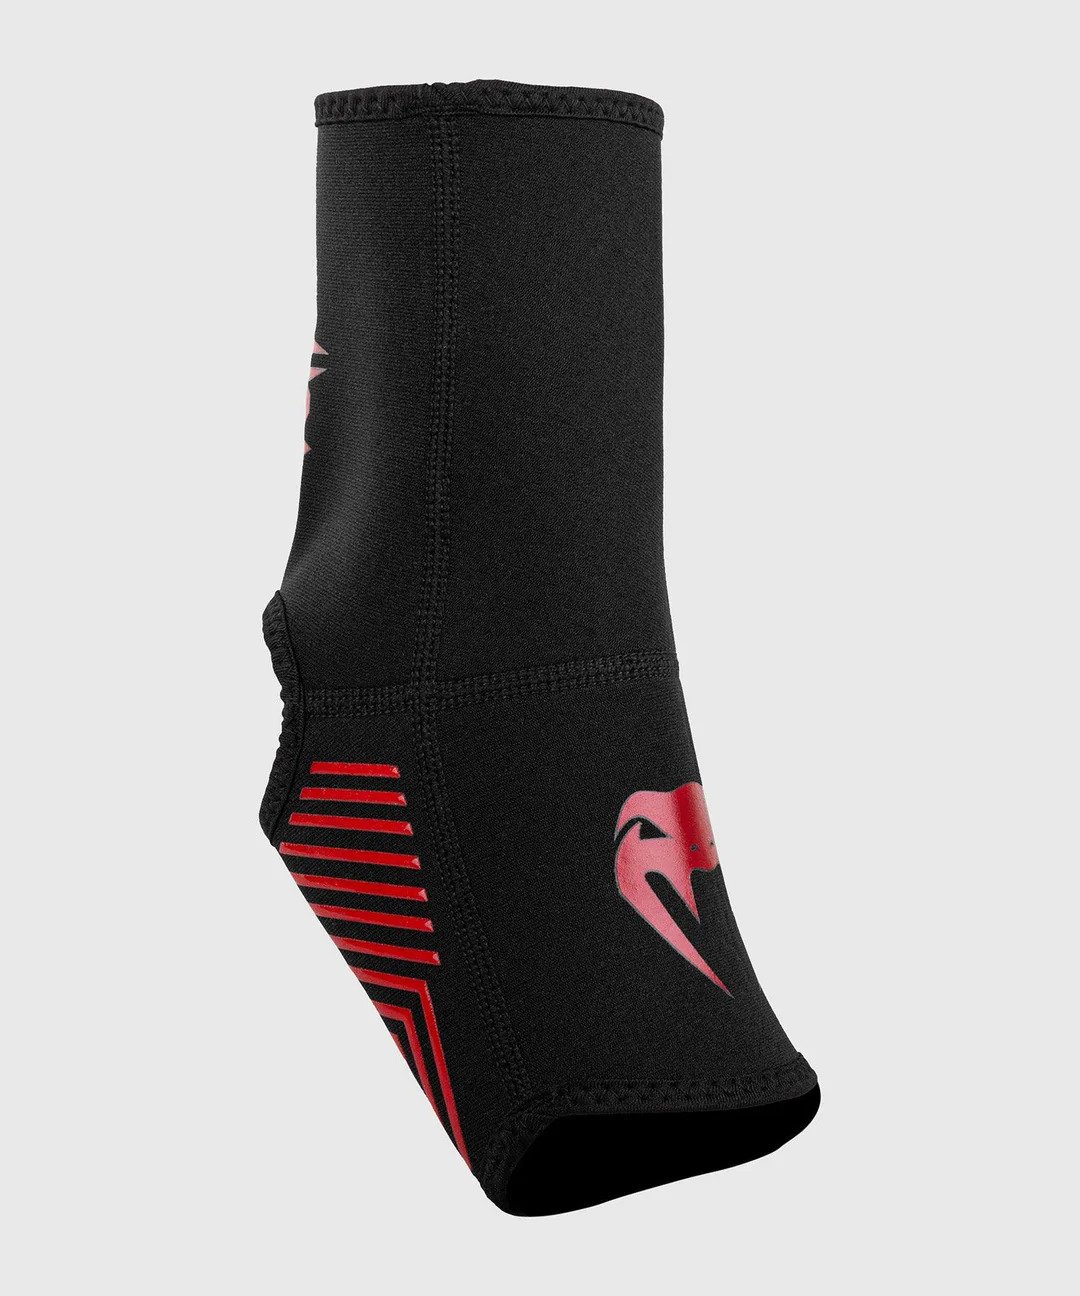 Venum Kontact Evo Foot Grips - Black/red